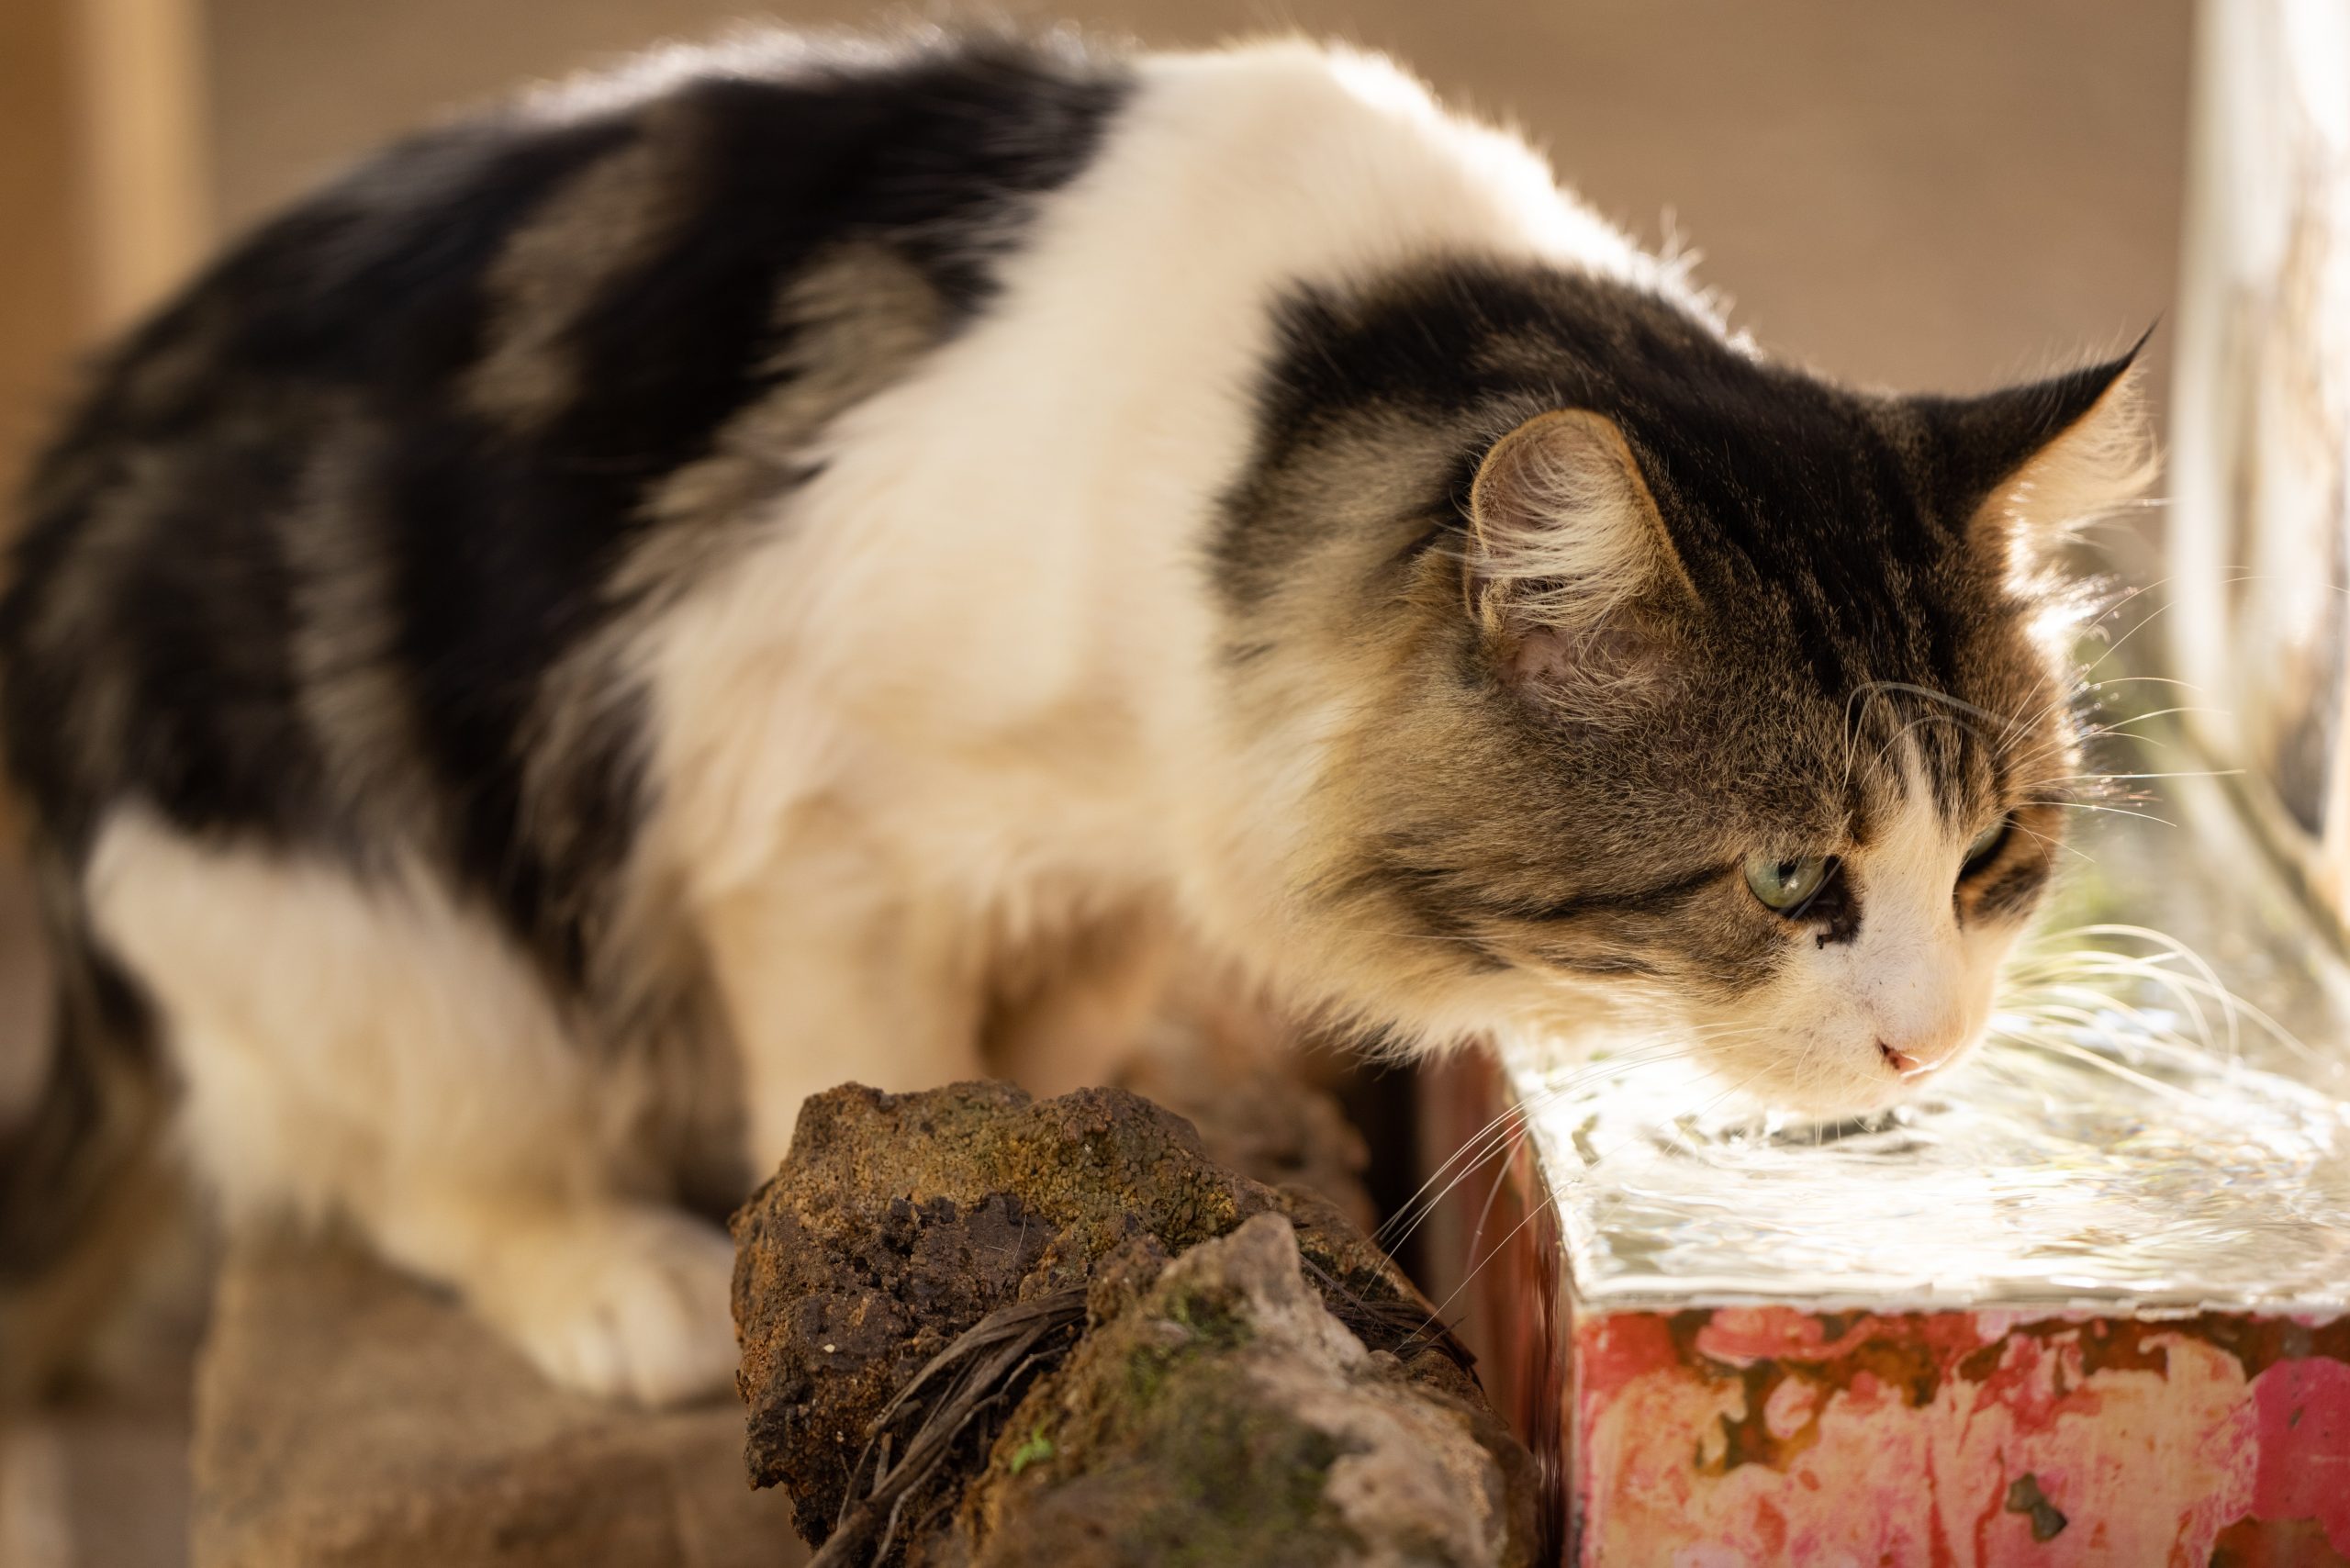 Trinkverhalten von Katzen,Trinkverhalten,Katzen,Trinkbrunnen,Katzen OP Versicherung,katzenkrankenversicherung,Katzenversicherung,Tierversicherung, Trinkverhalten und Wasseraufnahme von Katzen